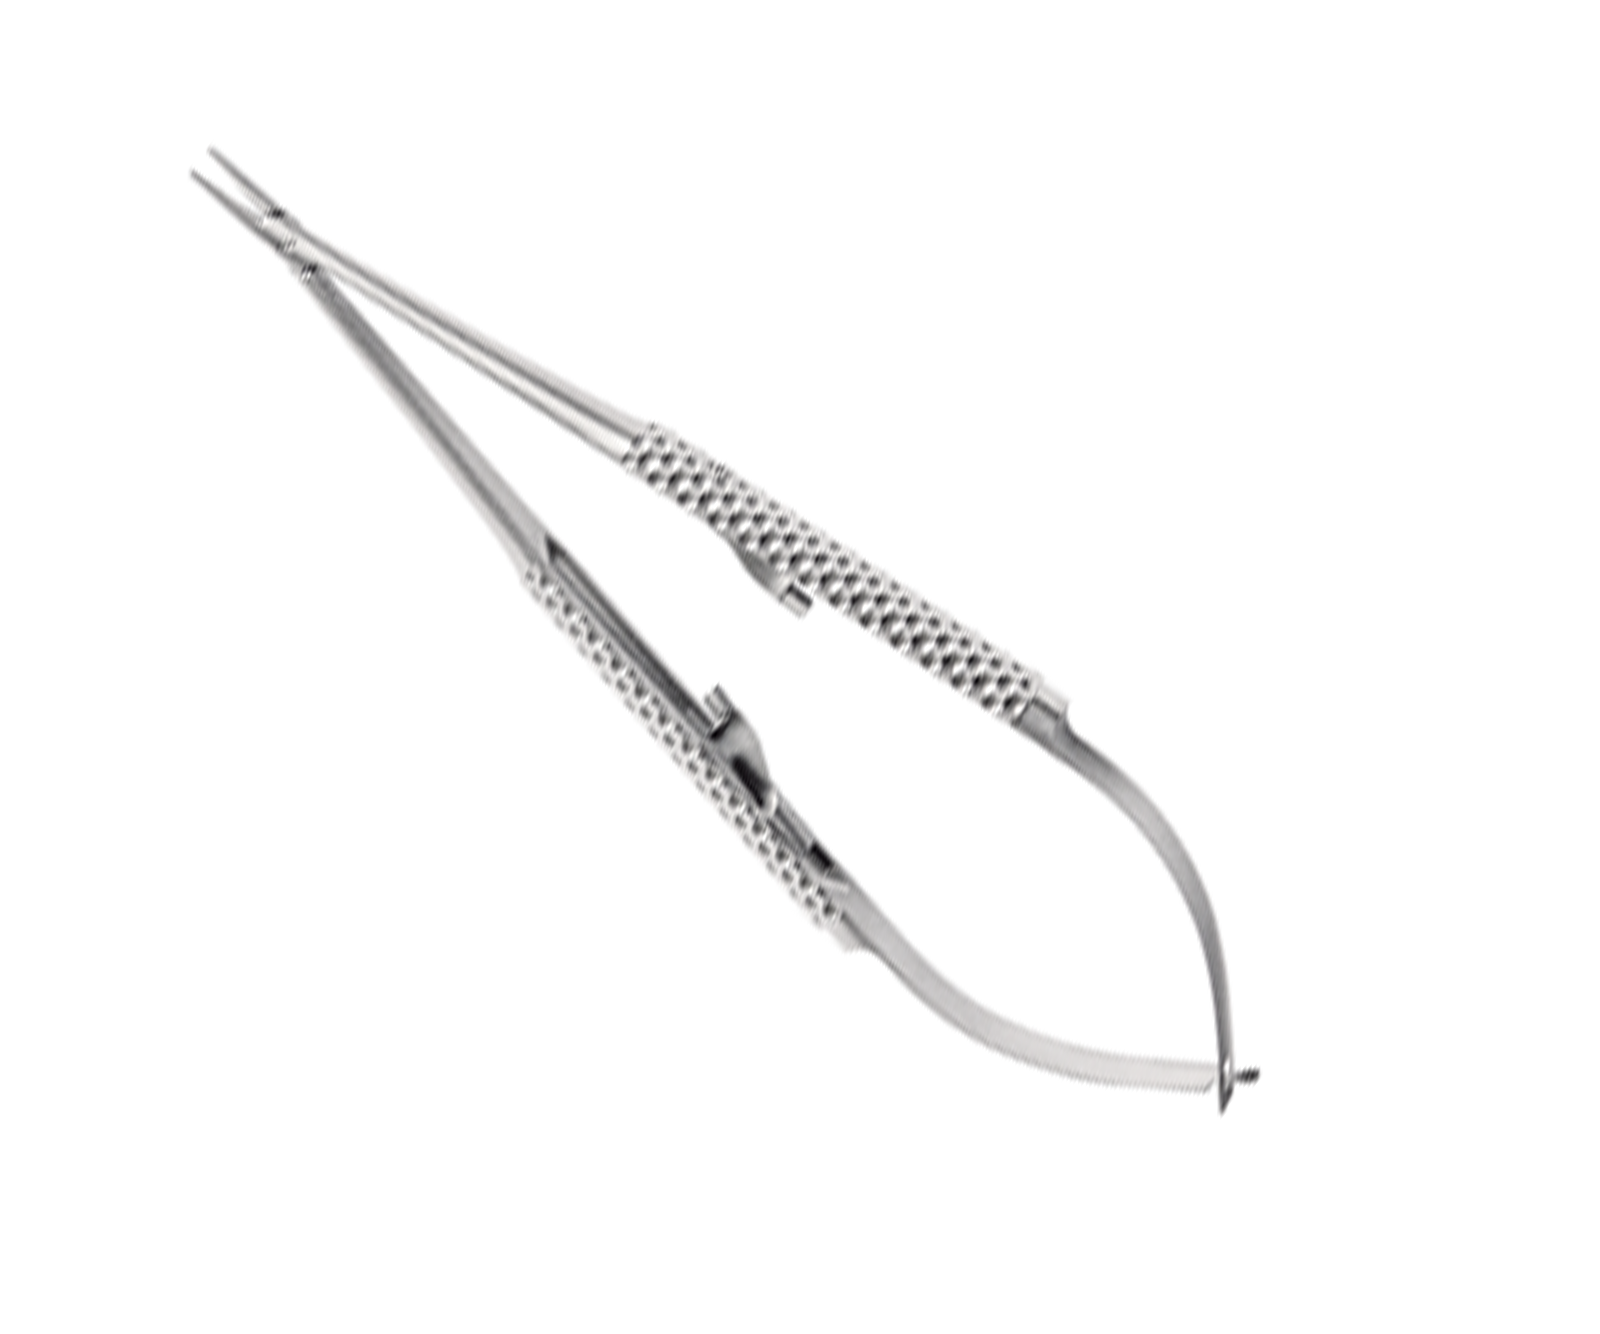 BARRAQUER, micro needle hold., 18cm, str, TC